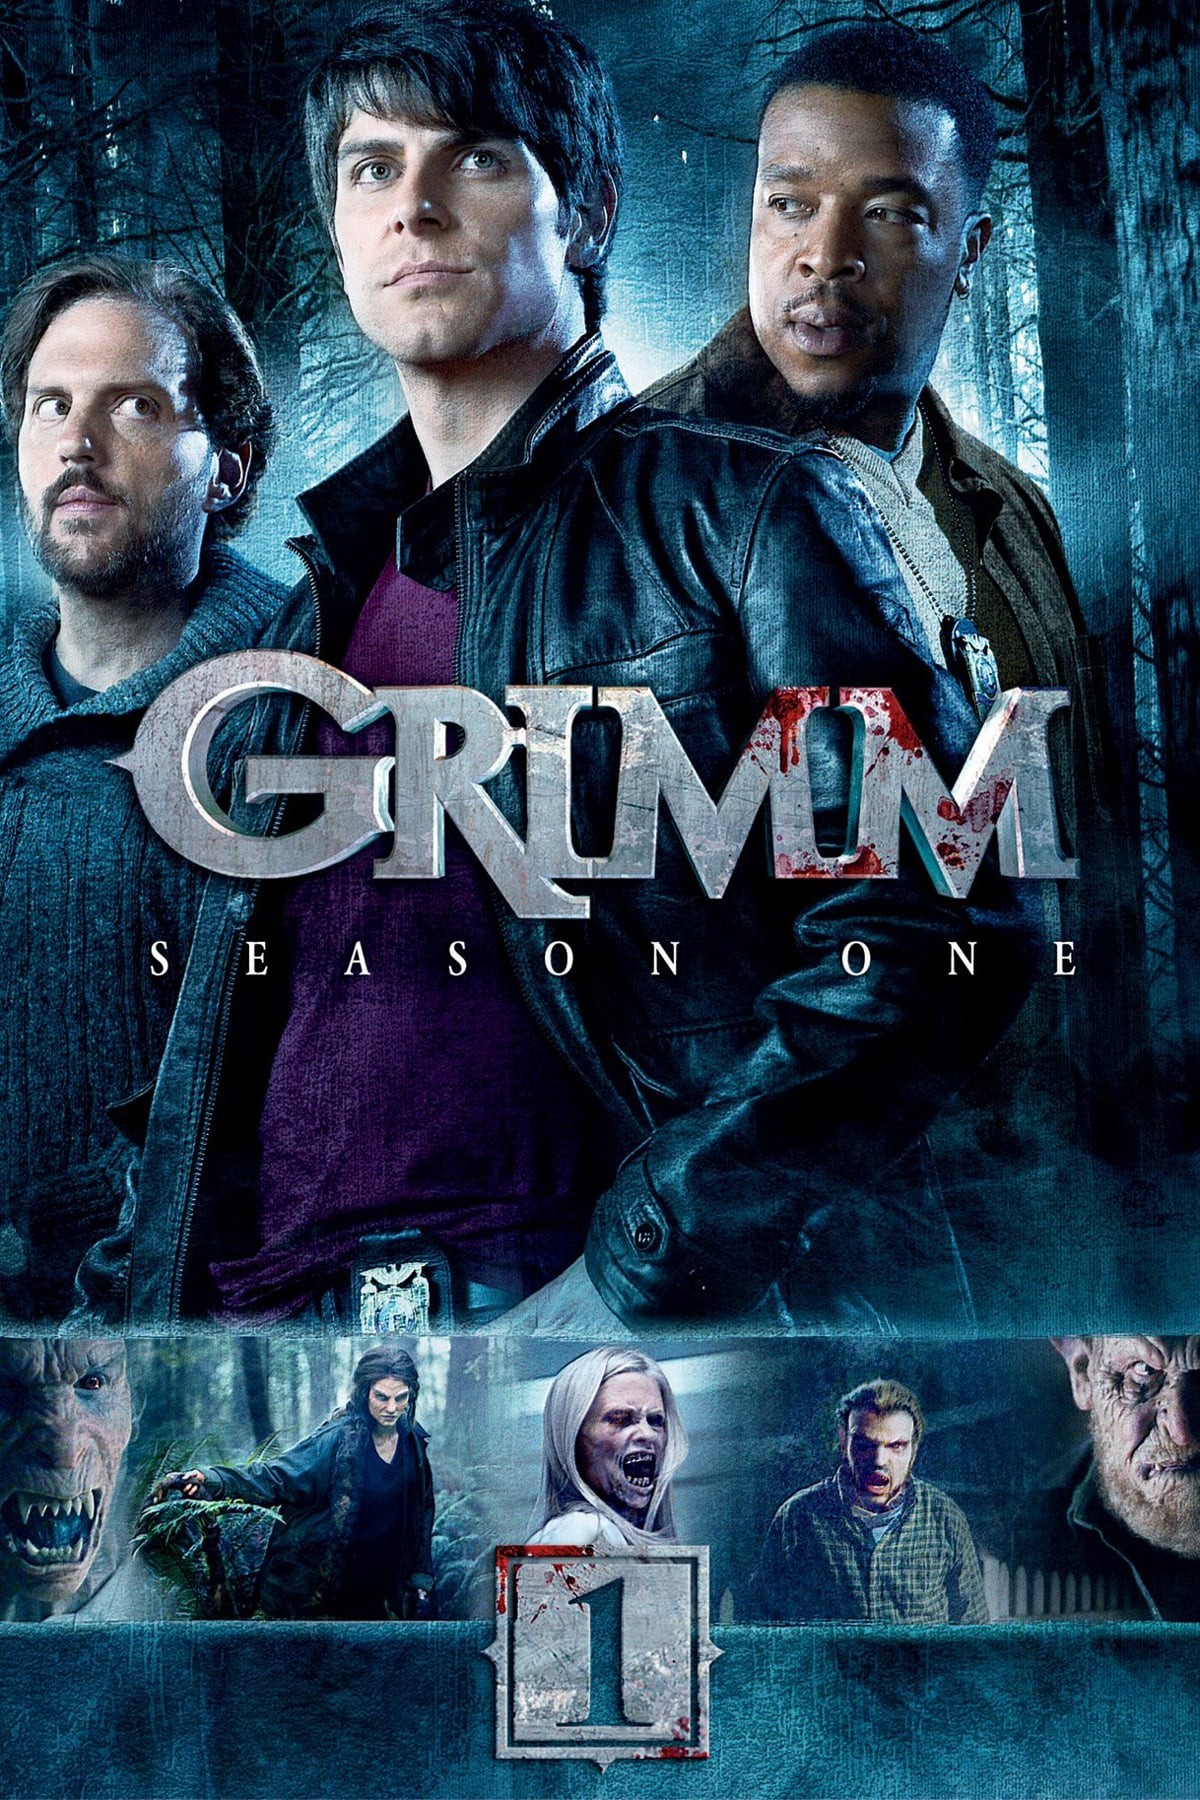 Anh Em Nhà Grimm (Phần 1) 2011